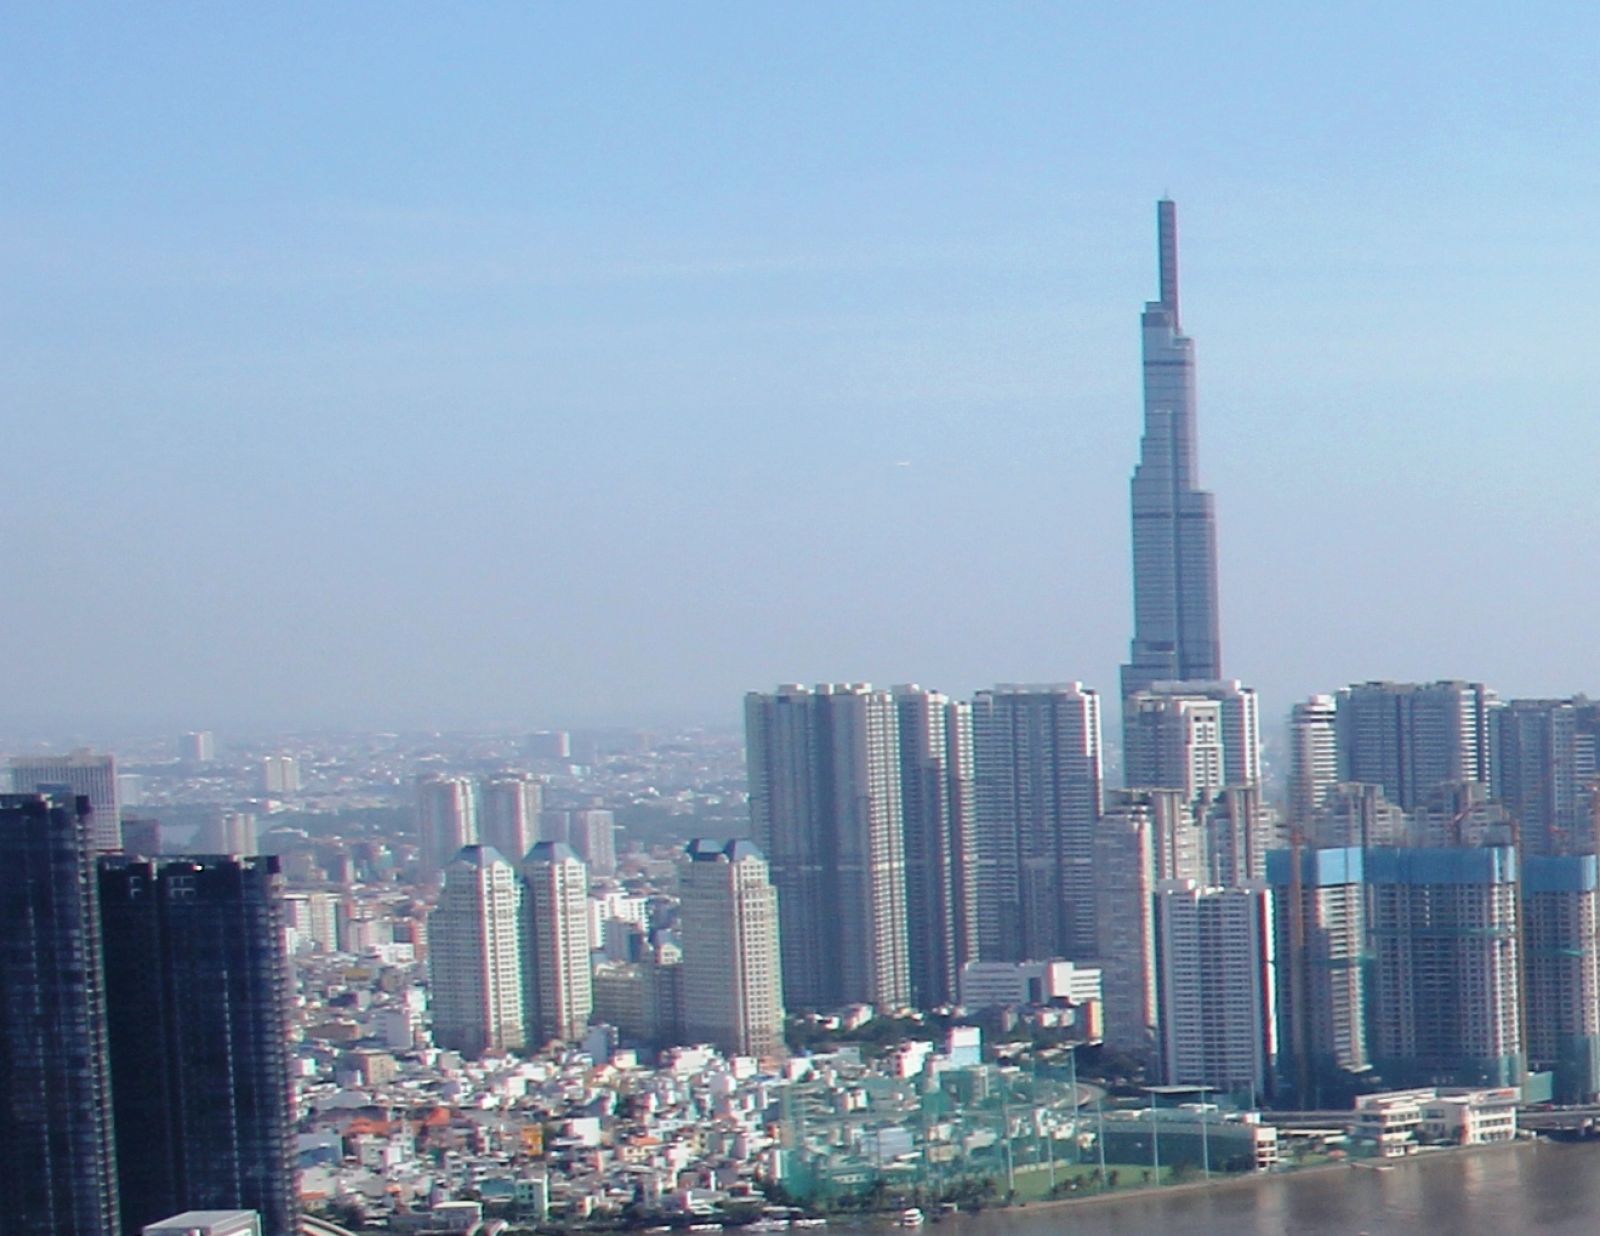 Đầu năm 2019 Trung tâm điều hành đô thị thông minh sẽ hoạt động tại TP. Hồ Chí Minh